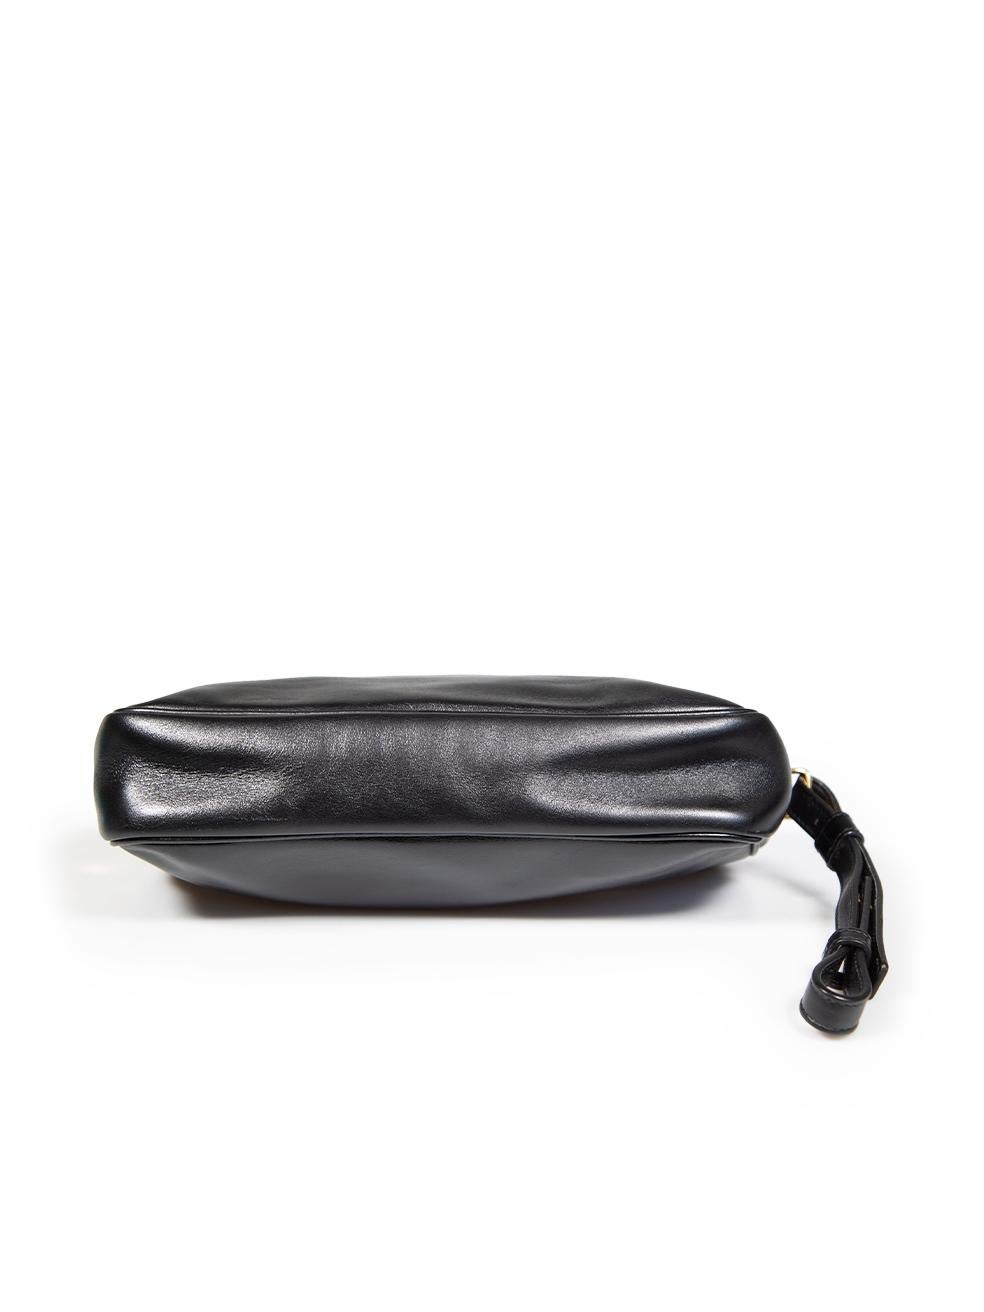 Women's Saint Laurent Black Leather Medium Clutch Bag For Sale